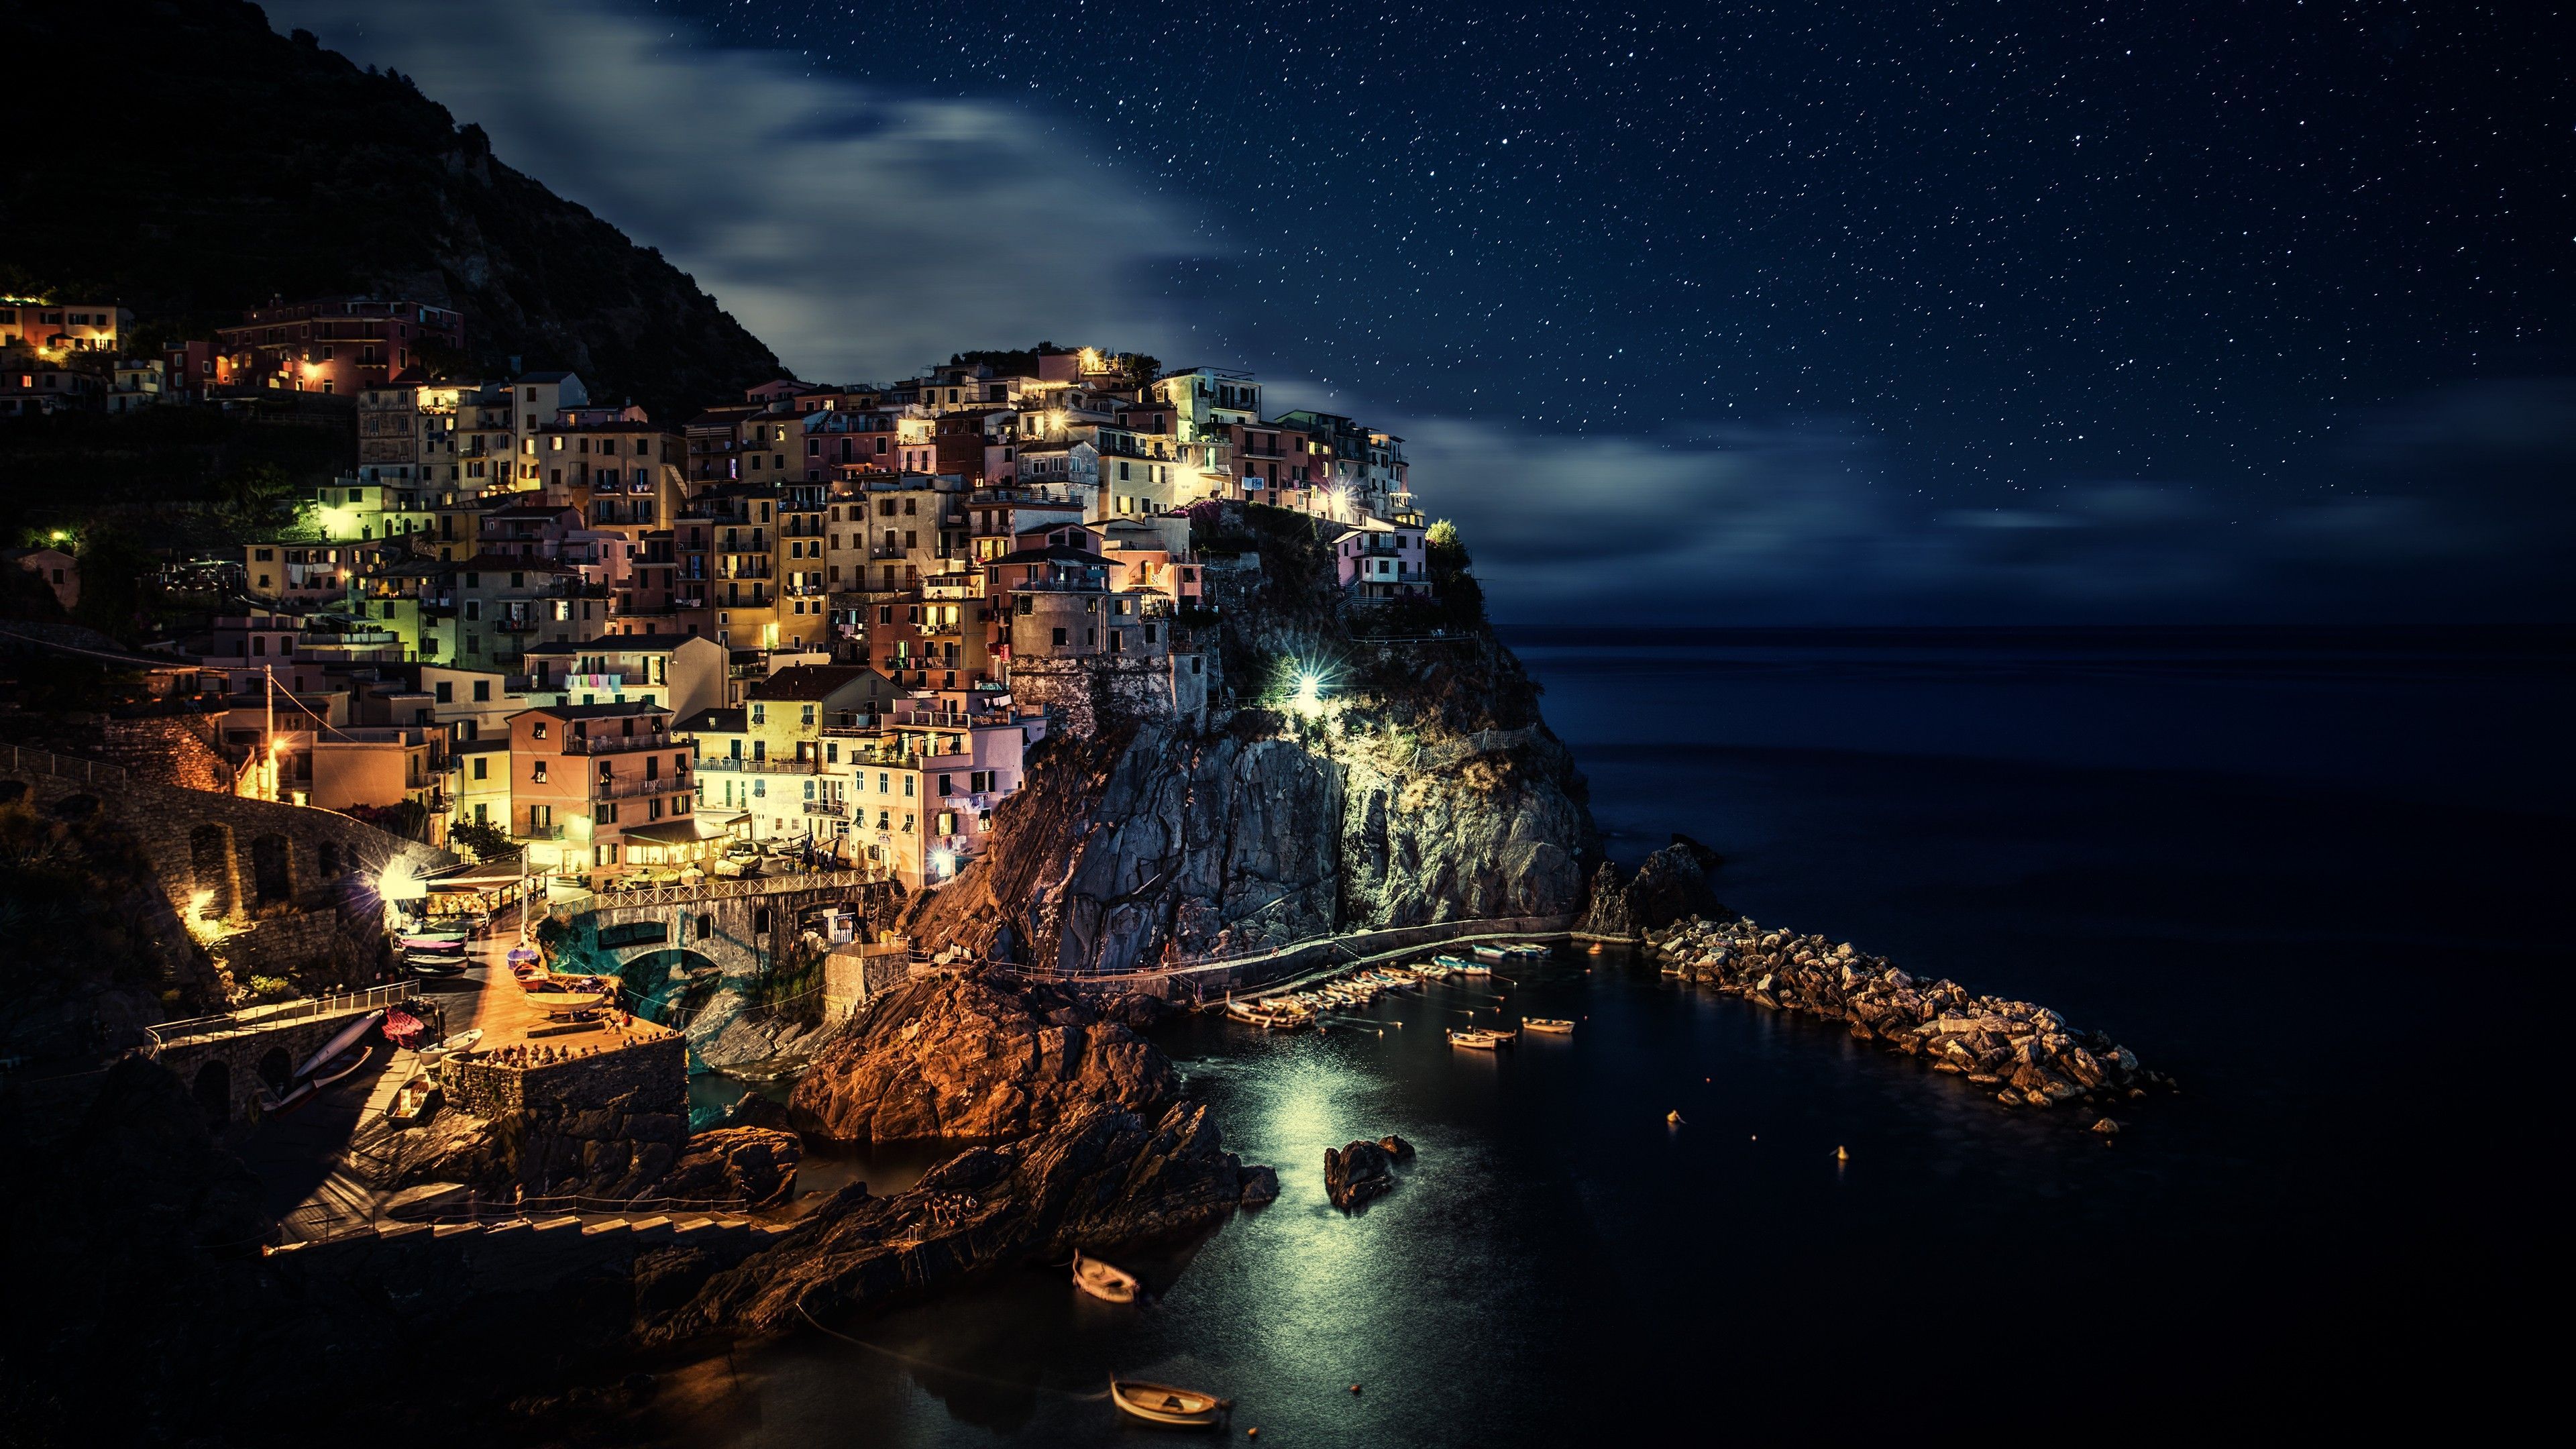  Die Besten Hintergrundbild 3840x2160. Laden Sie Das Italien Hintergrundbild Für Ihr Handy In Hochwertigen, Hintergrundbildern Italien Kostenlos Herunter